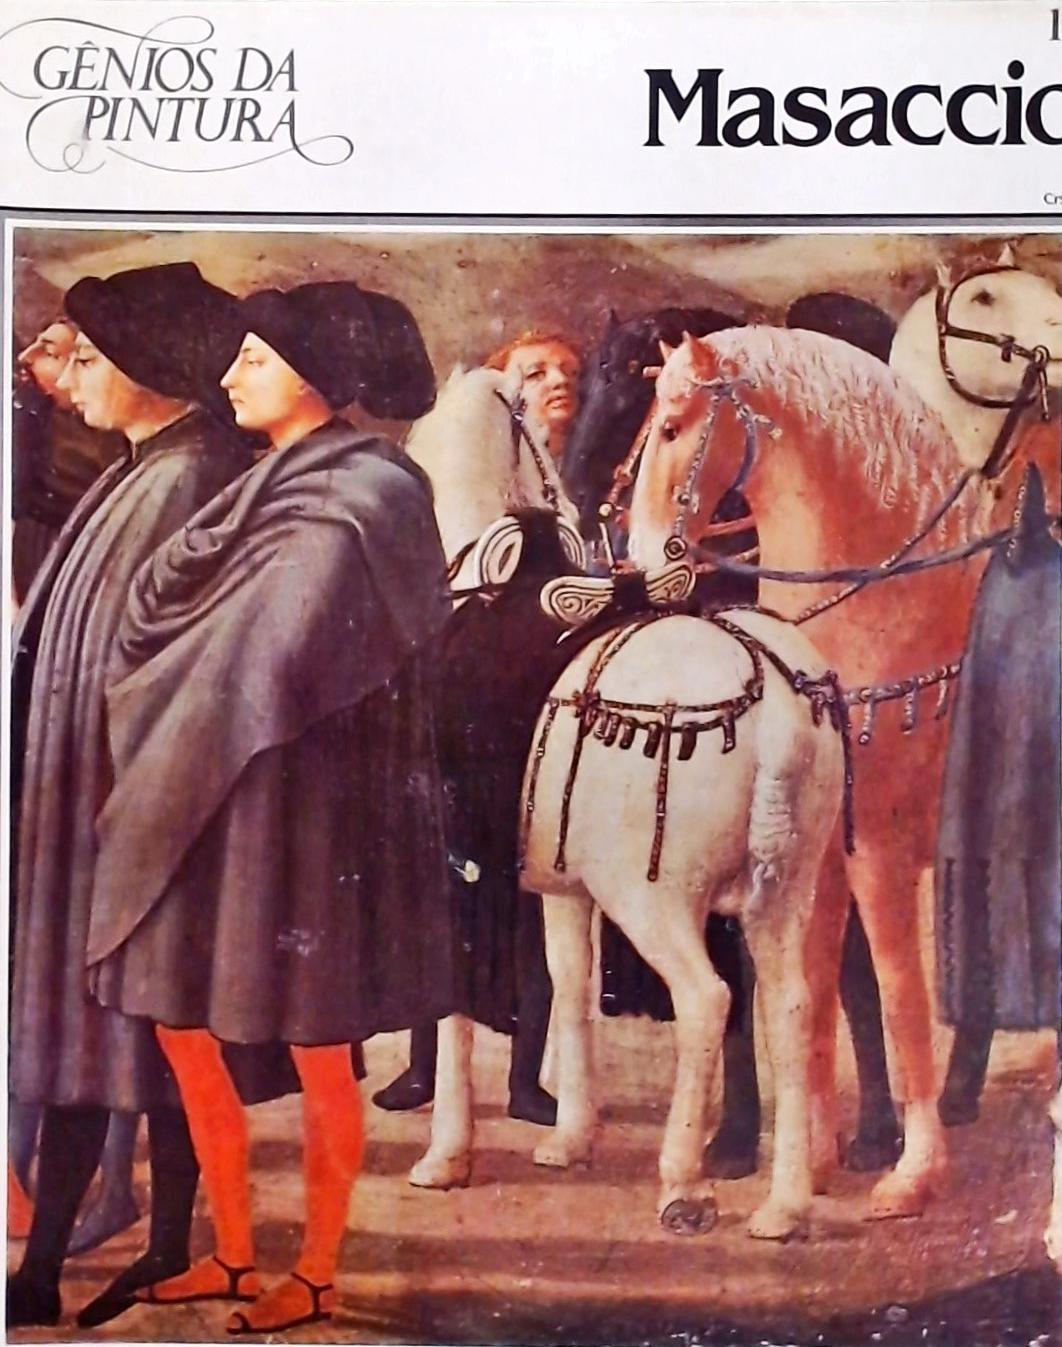 Gênios da Pintura - Masaccio